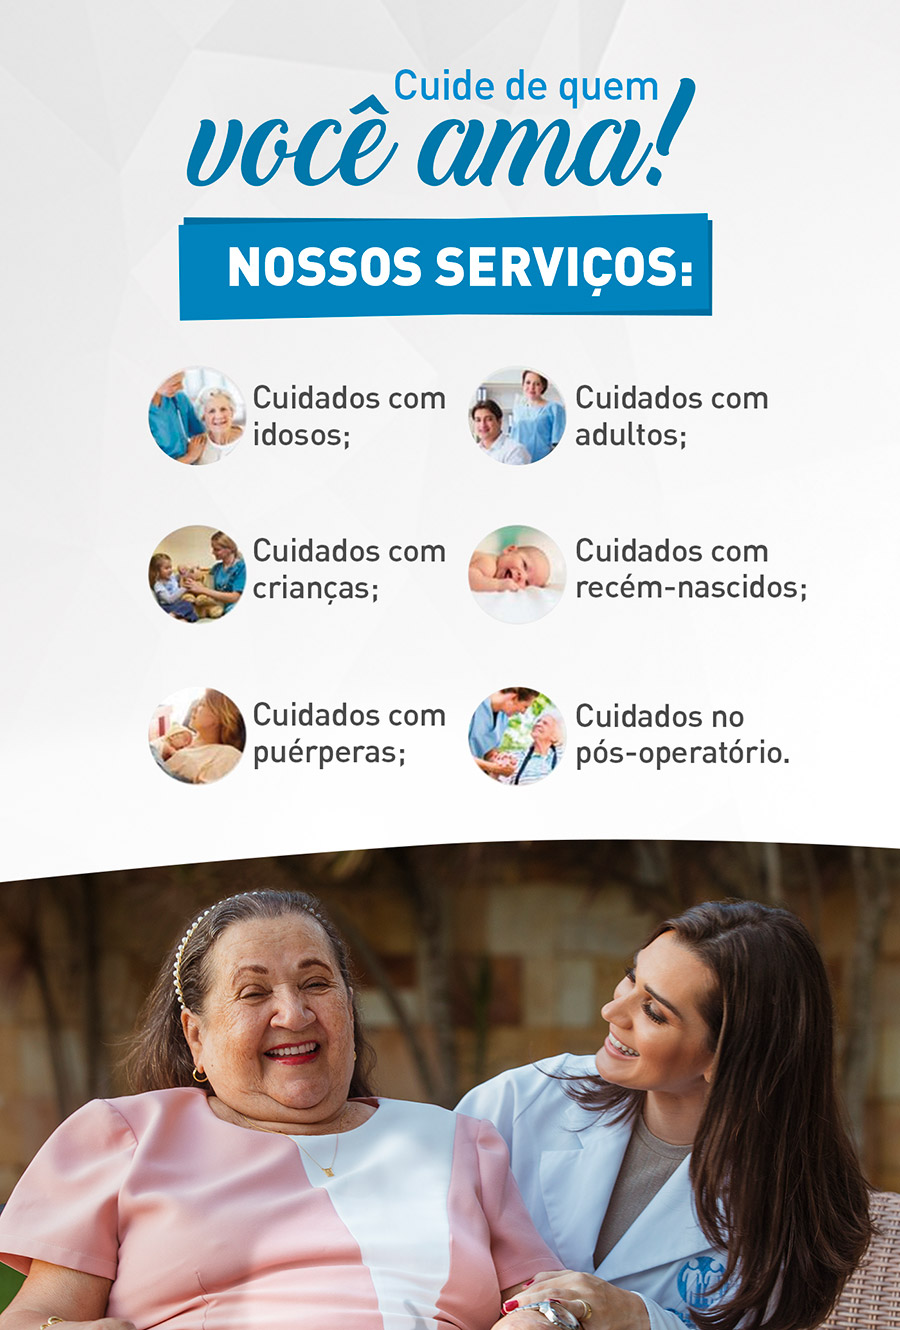 Copacabana/RJ - Cuidare - Cuidadores de Pessoas